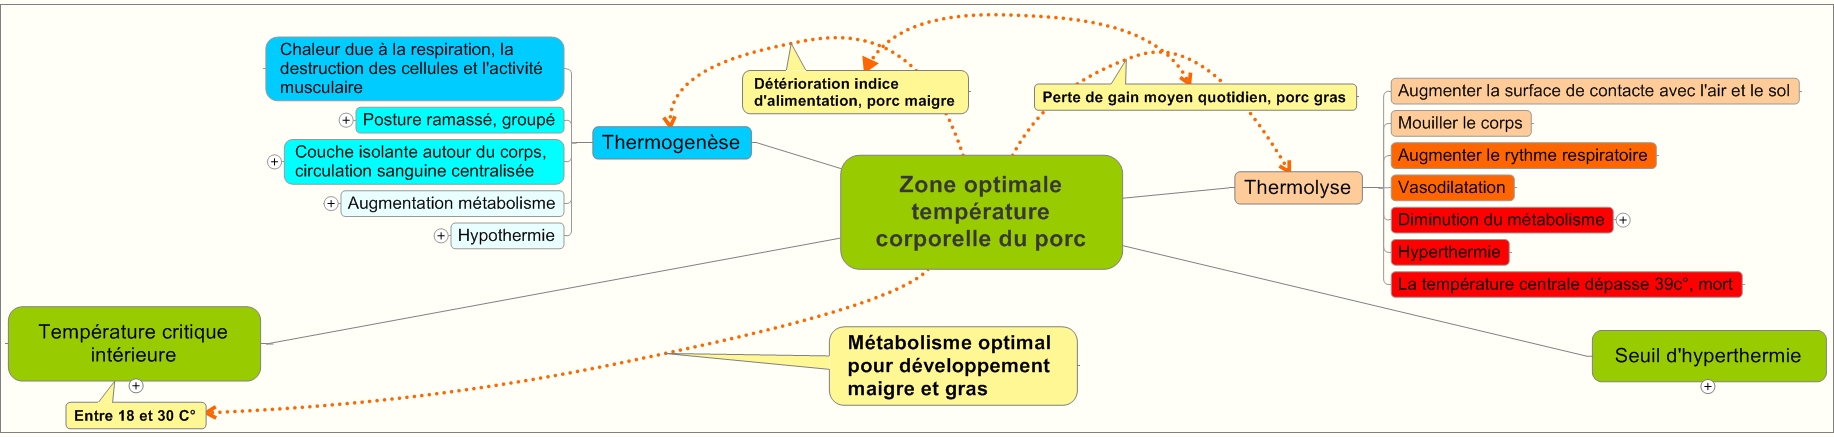 Zone-optimale-température-corporelle-du-porc